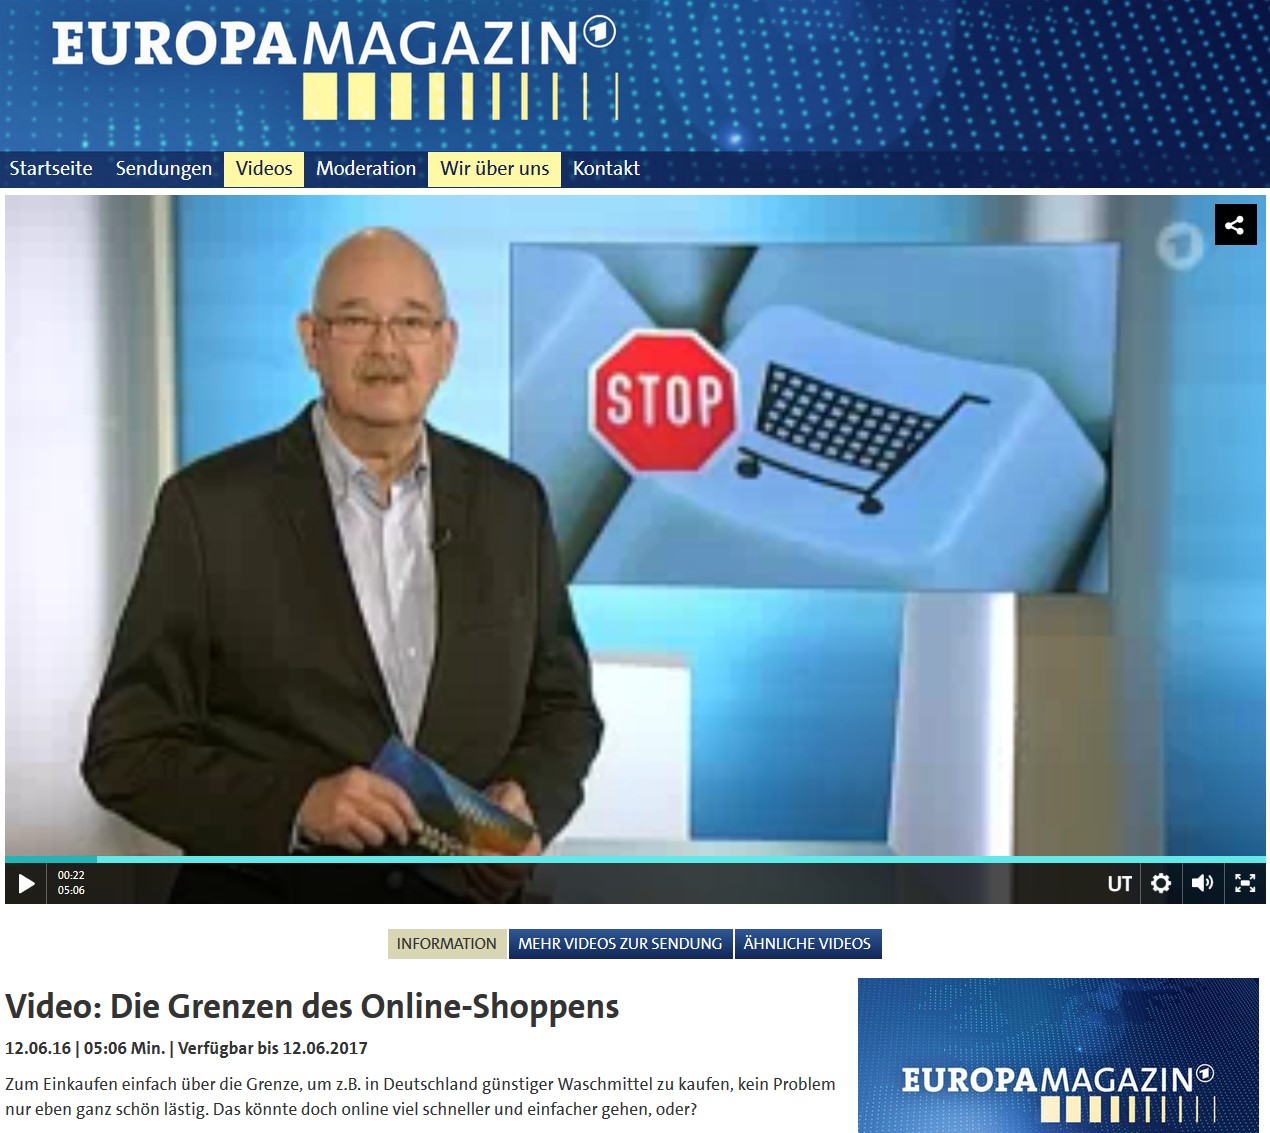 12.06.2016, Fernsehbeitrag, Europa Magazin, Die Grenzen des Online-Shoppens http://www.daserste.